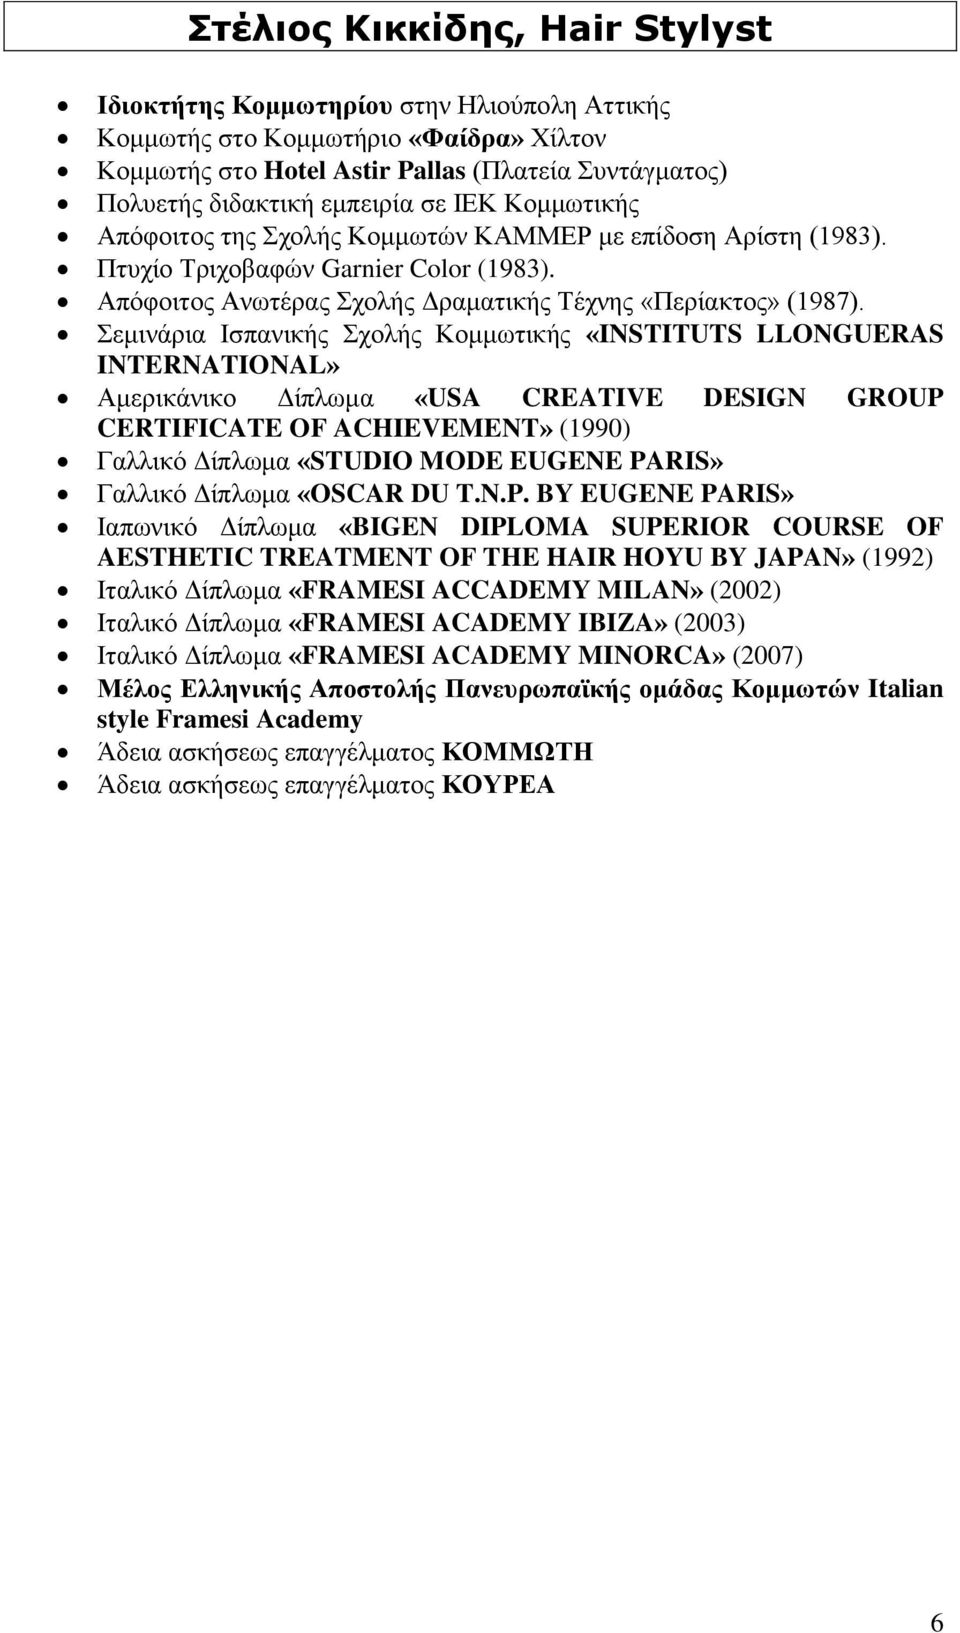 Σεμινάρια Ισπανικής Σχολής Κομμωτικής «INSTITUTS LLONGUERAS INTERNATIONAL» Αμερικάνικο Δίπλωμα «USA CREATIVE DESIGN GROUP CERTIFICATE OF ACHIEVEMENT» (1990) Γαλλικό Δίπλωμα «STUDIO MODE EUGENE PARIS»